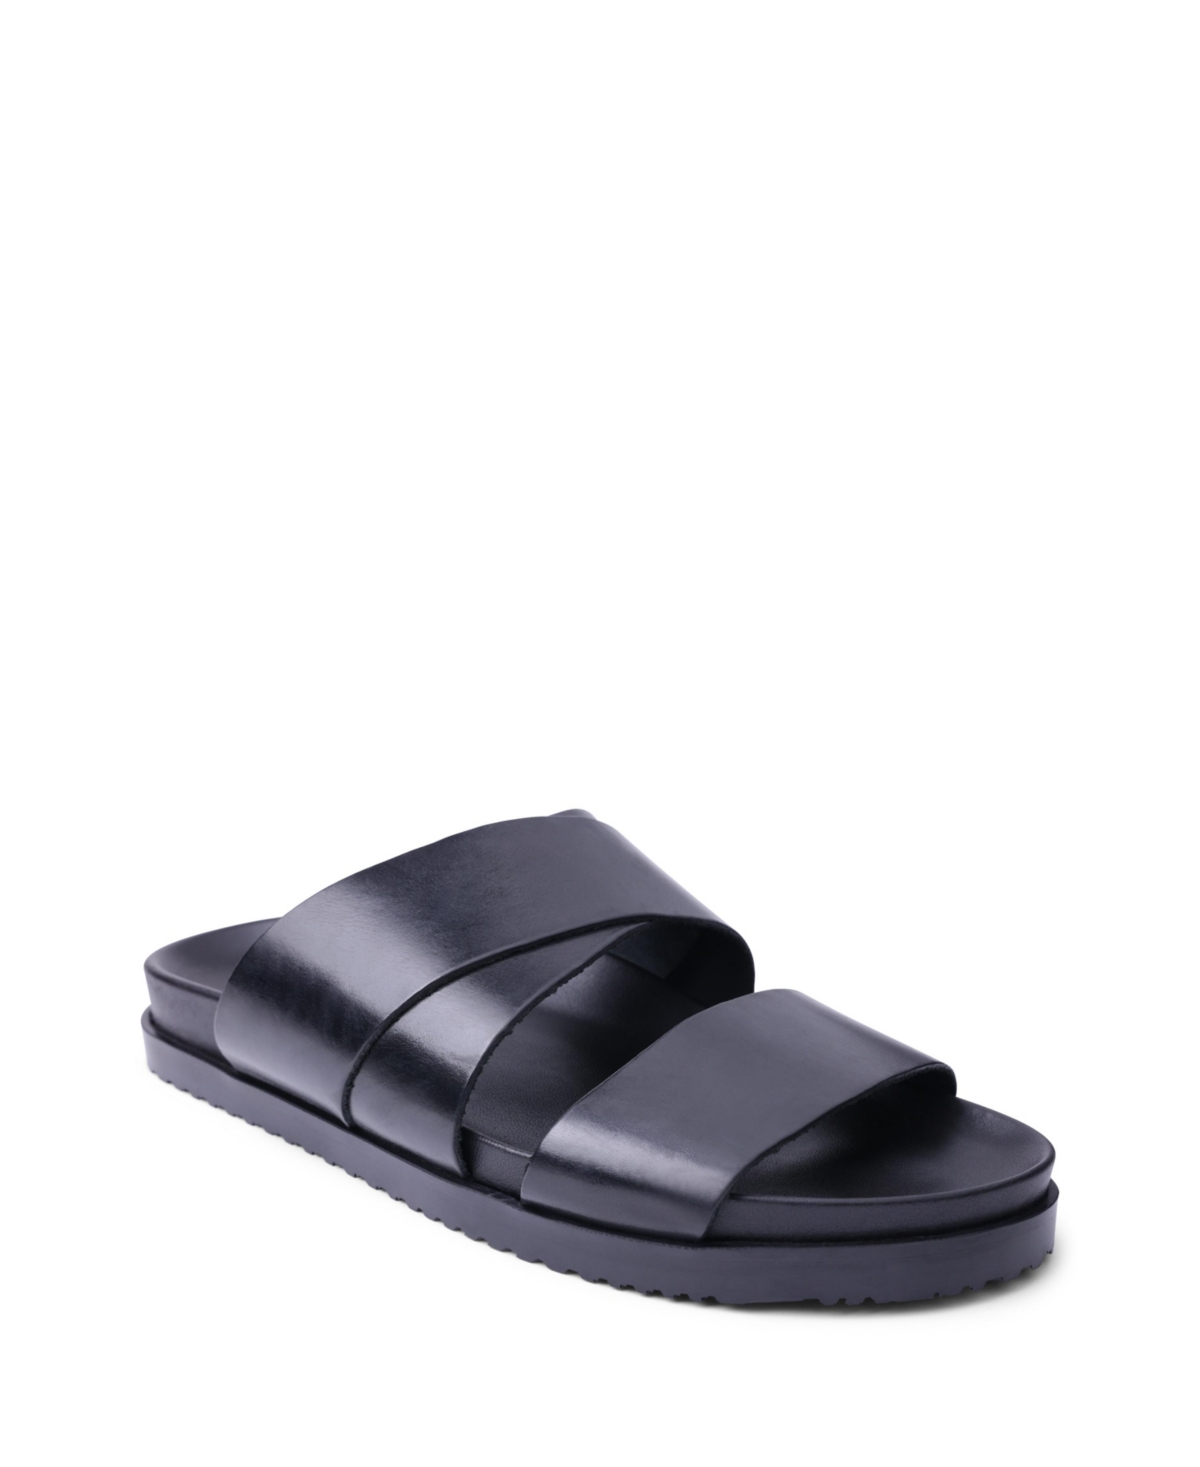 Bruno Magli Men's San Remo Leather Slide Sandals Men's Shoes